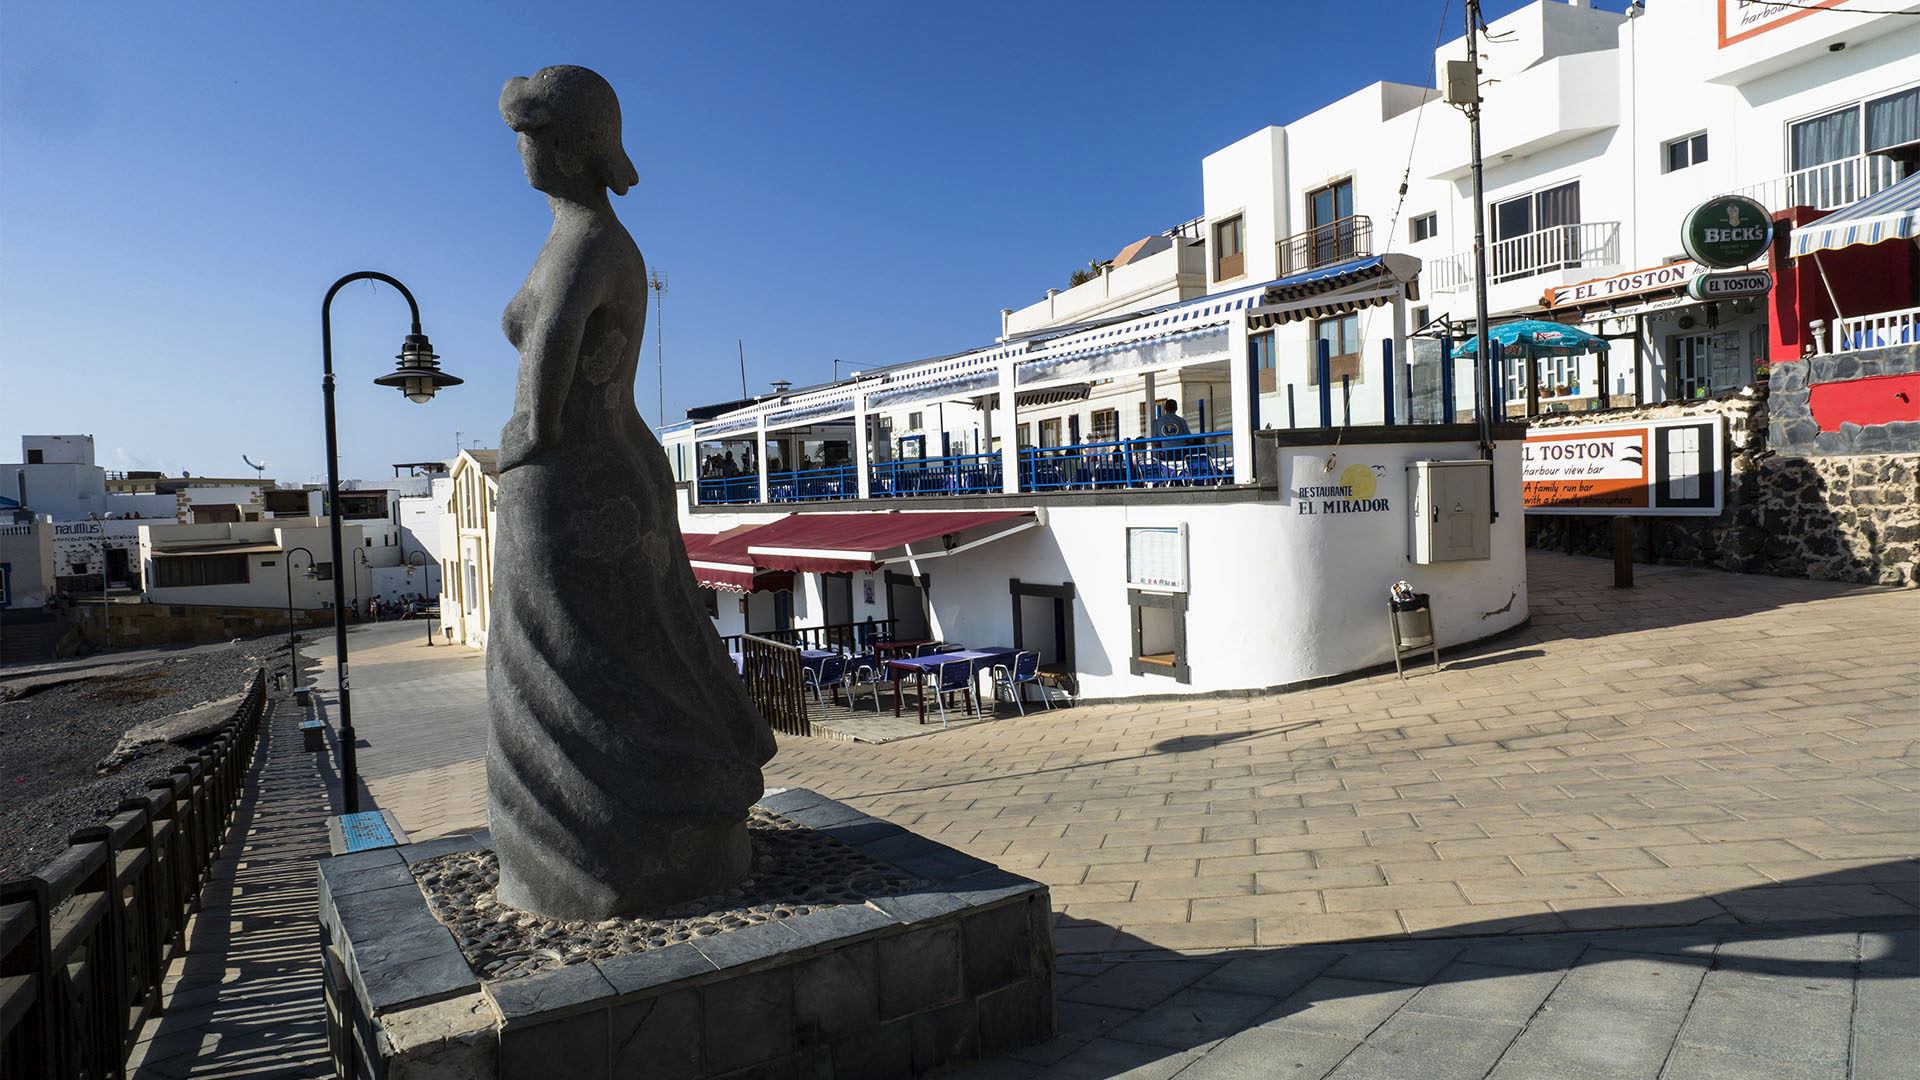 Städte und Ortschaften Fuerteventuras: El Cotillo